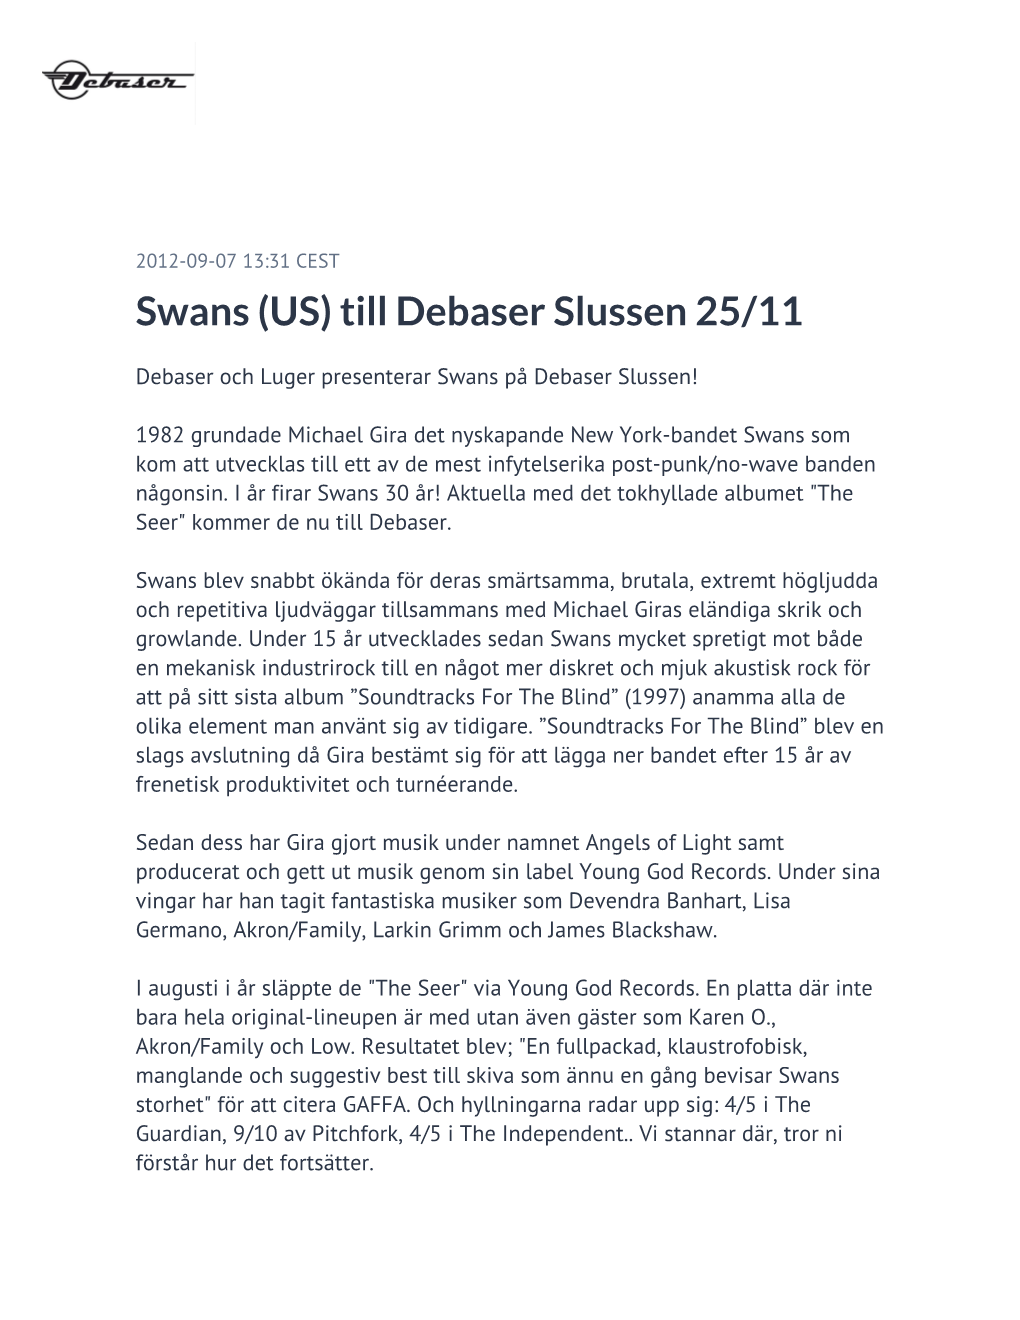 Swans (US) Till Debaser Slussen 25/11